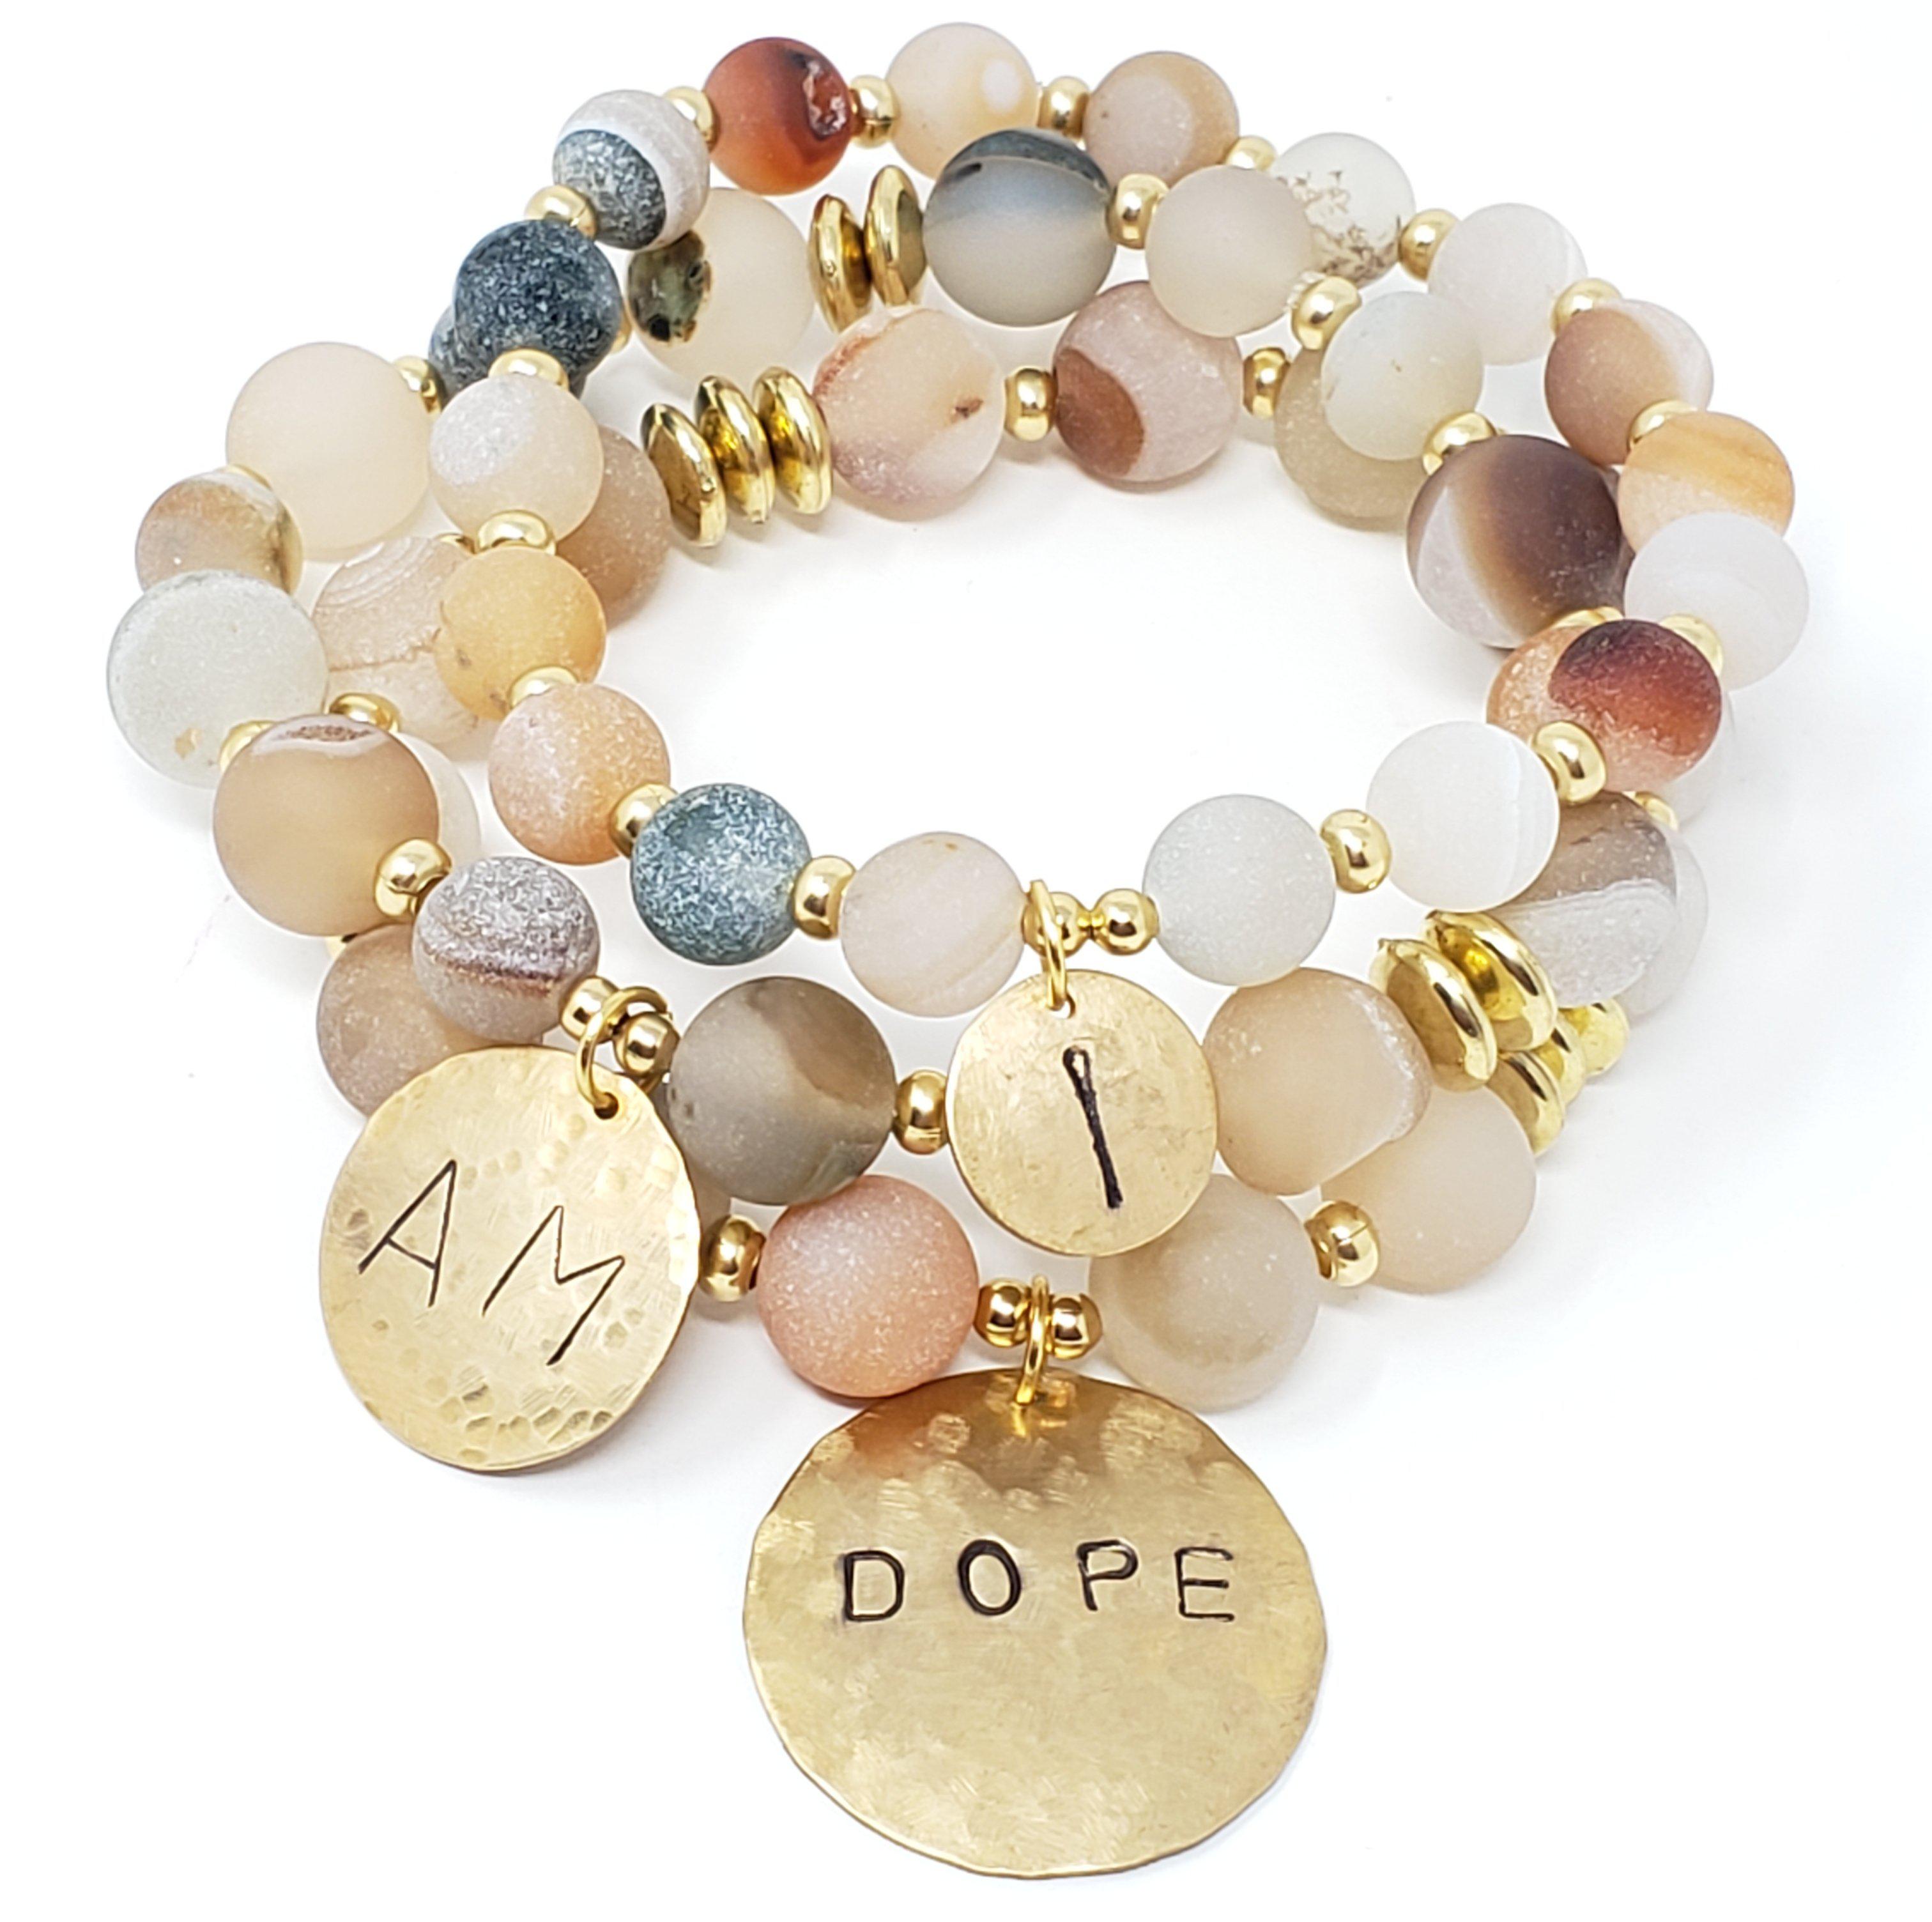 "I Am Dope" Affirmation Bracelets